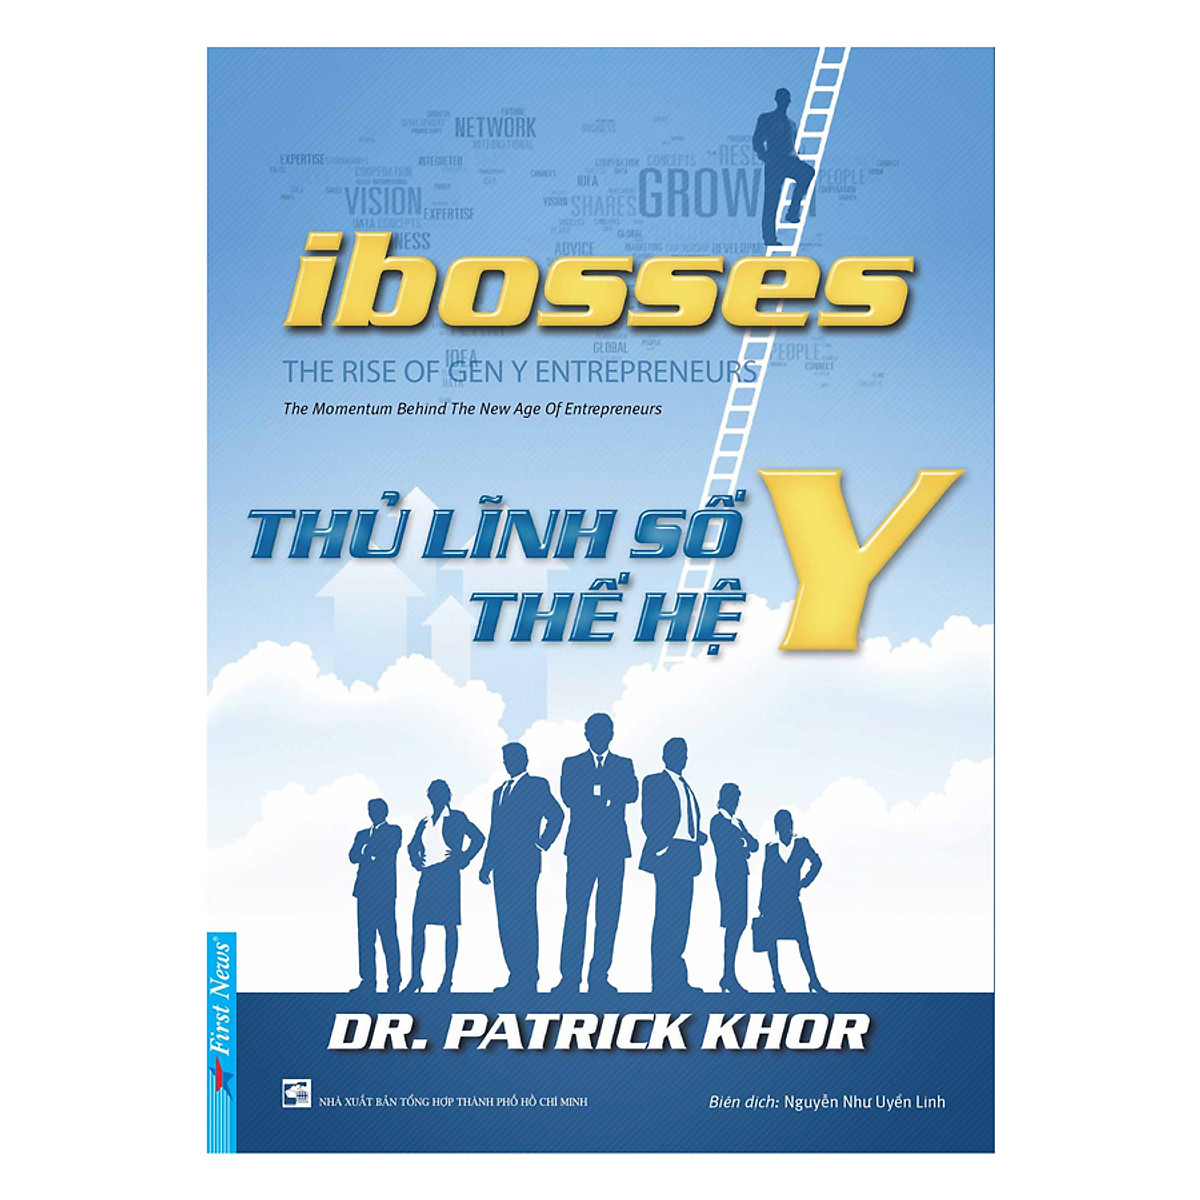 Combo 2 cuốn sách: Ibosses - Thủ Lĩnh Số Thế Hệ Y + Made in korea-câu chuyện cuộc đời Chung Ju Yung